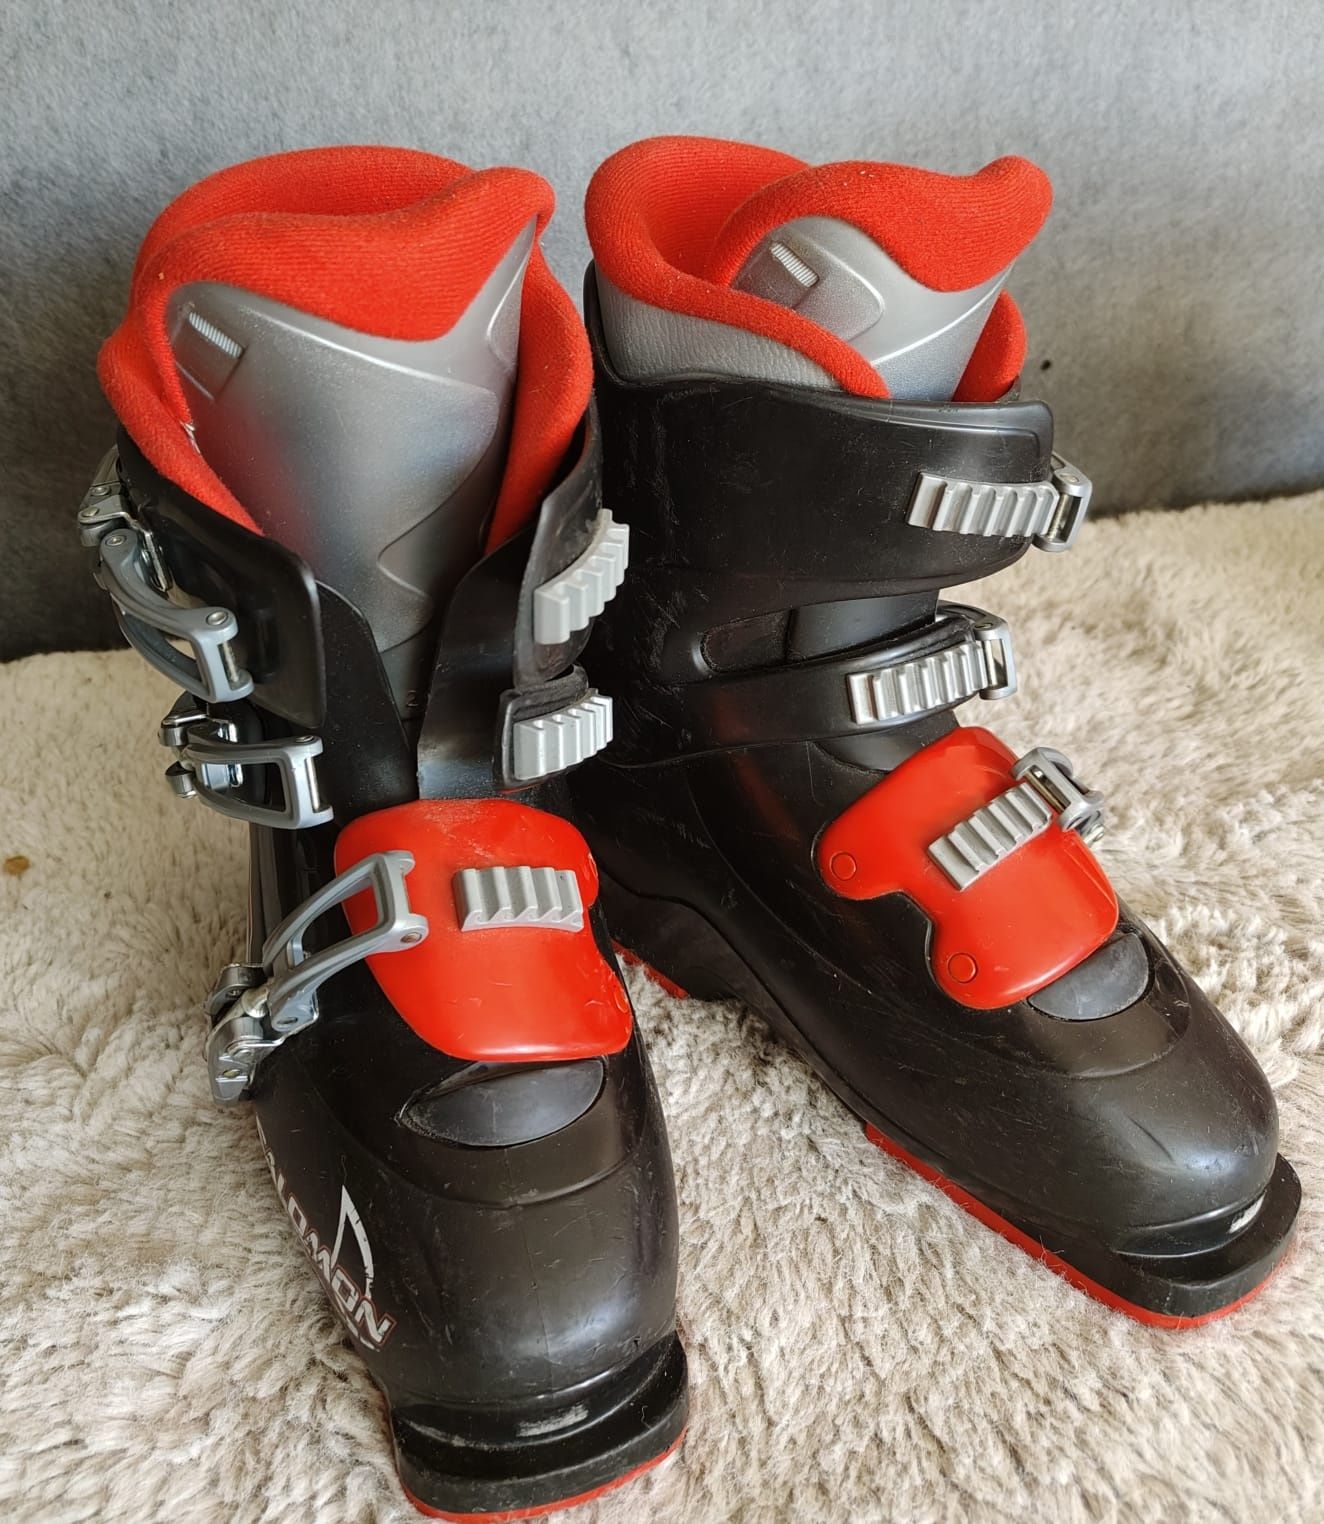 Czarne buty narciarskie SALOMON Rozm 38.5 - 24.5 cm wkładka polecam